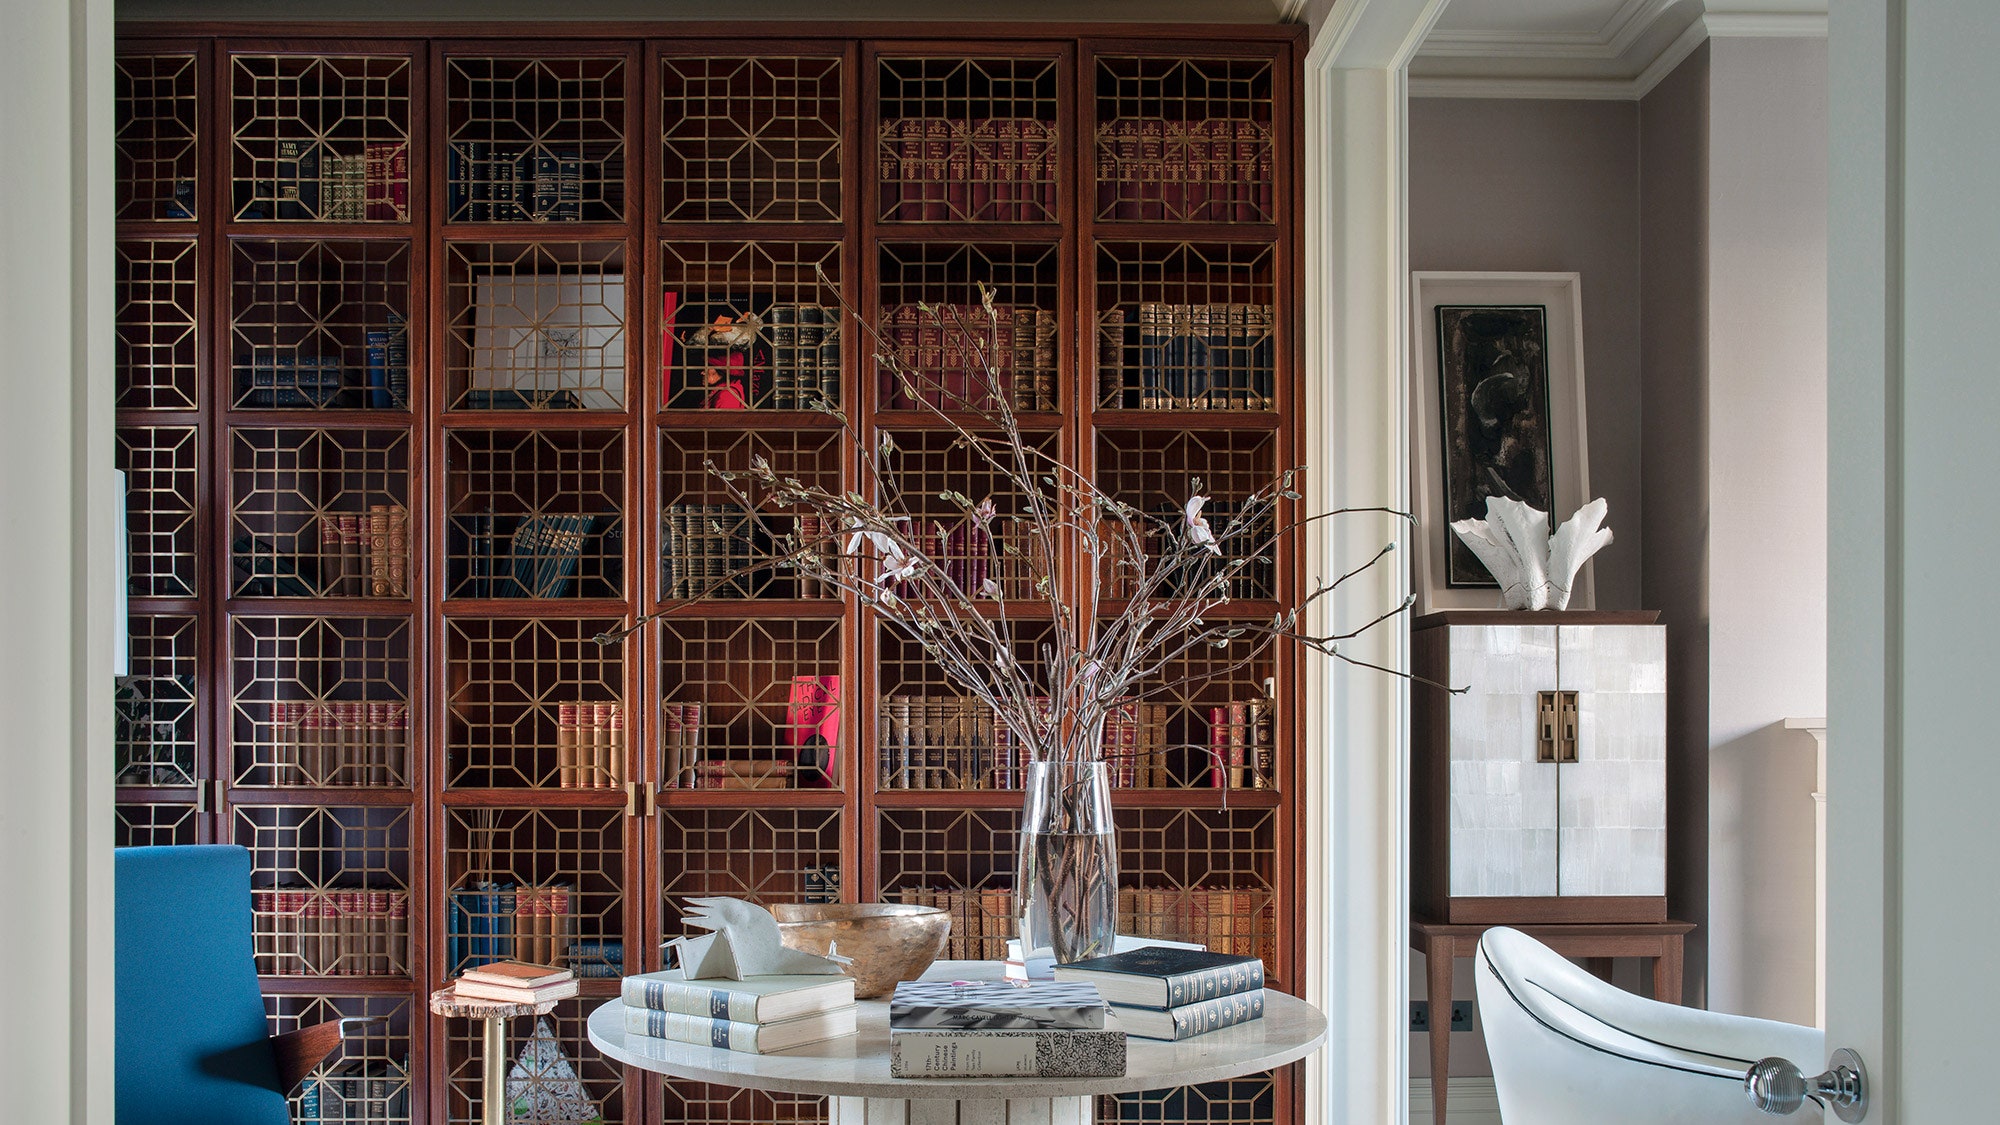 Дизайн интерьера дома по проекту Ираклия Зарии в Лондоне — Интерьер с обложки